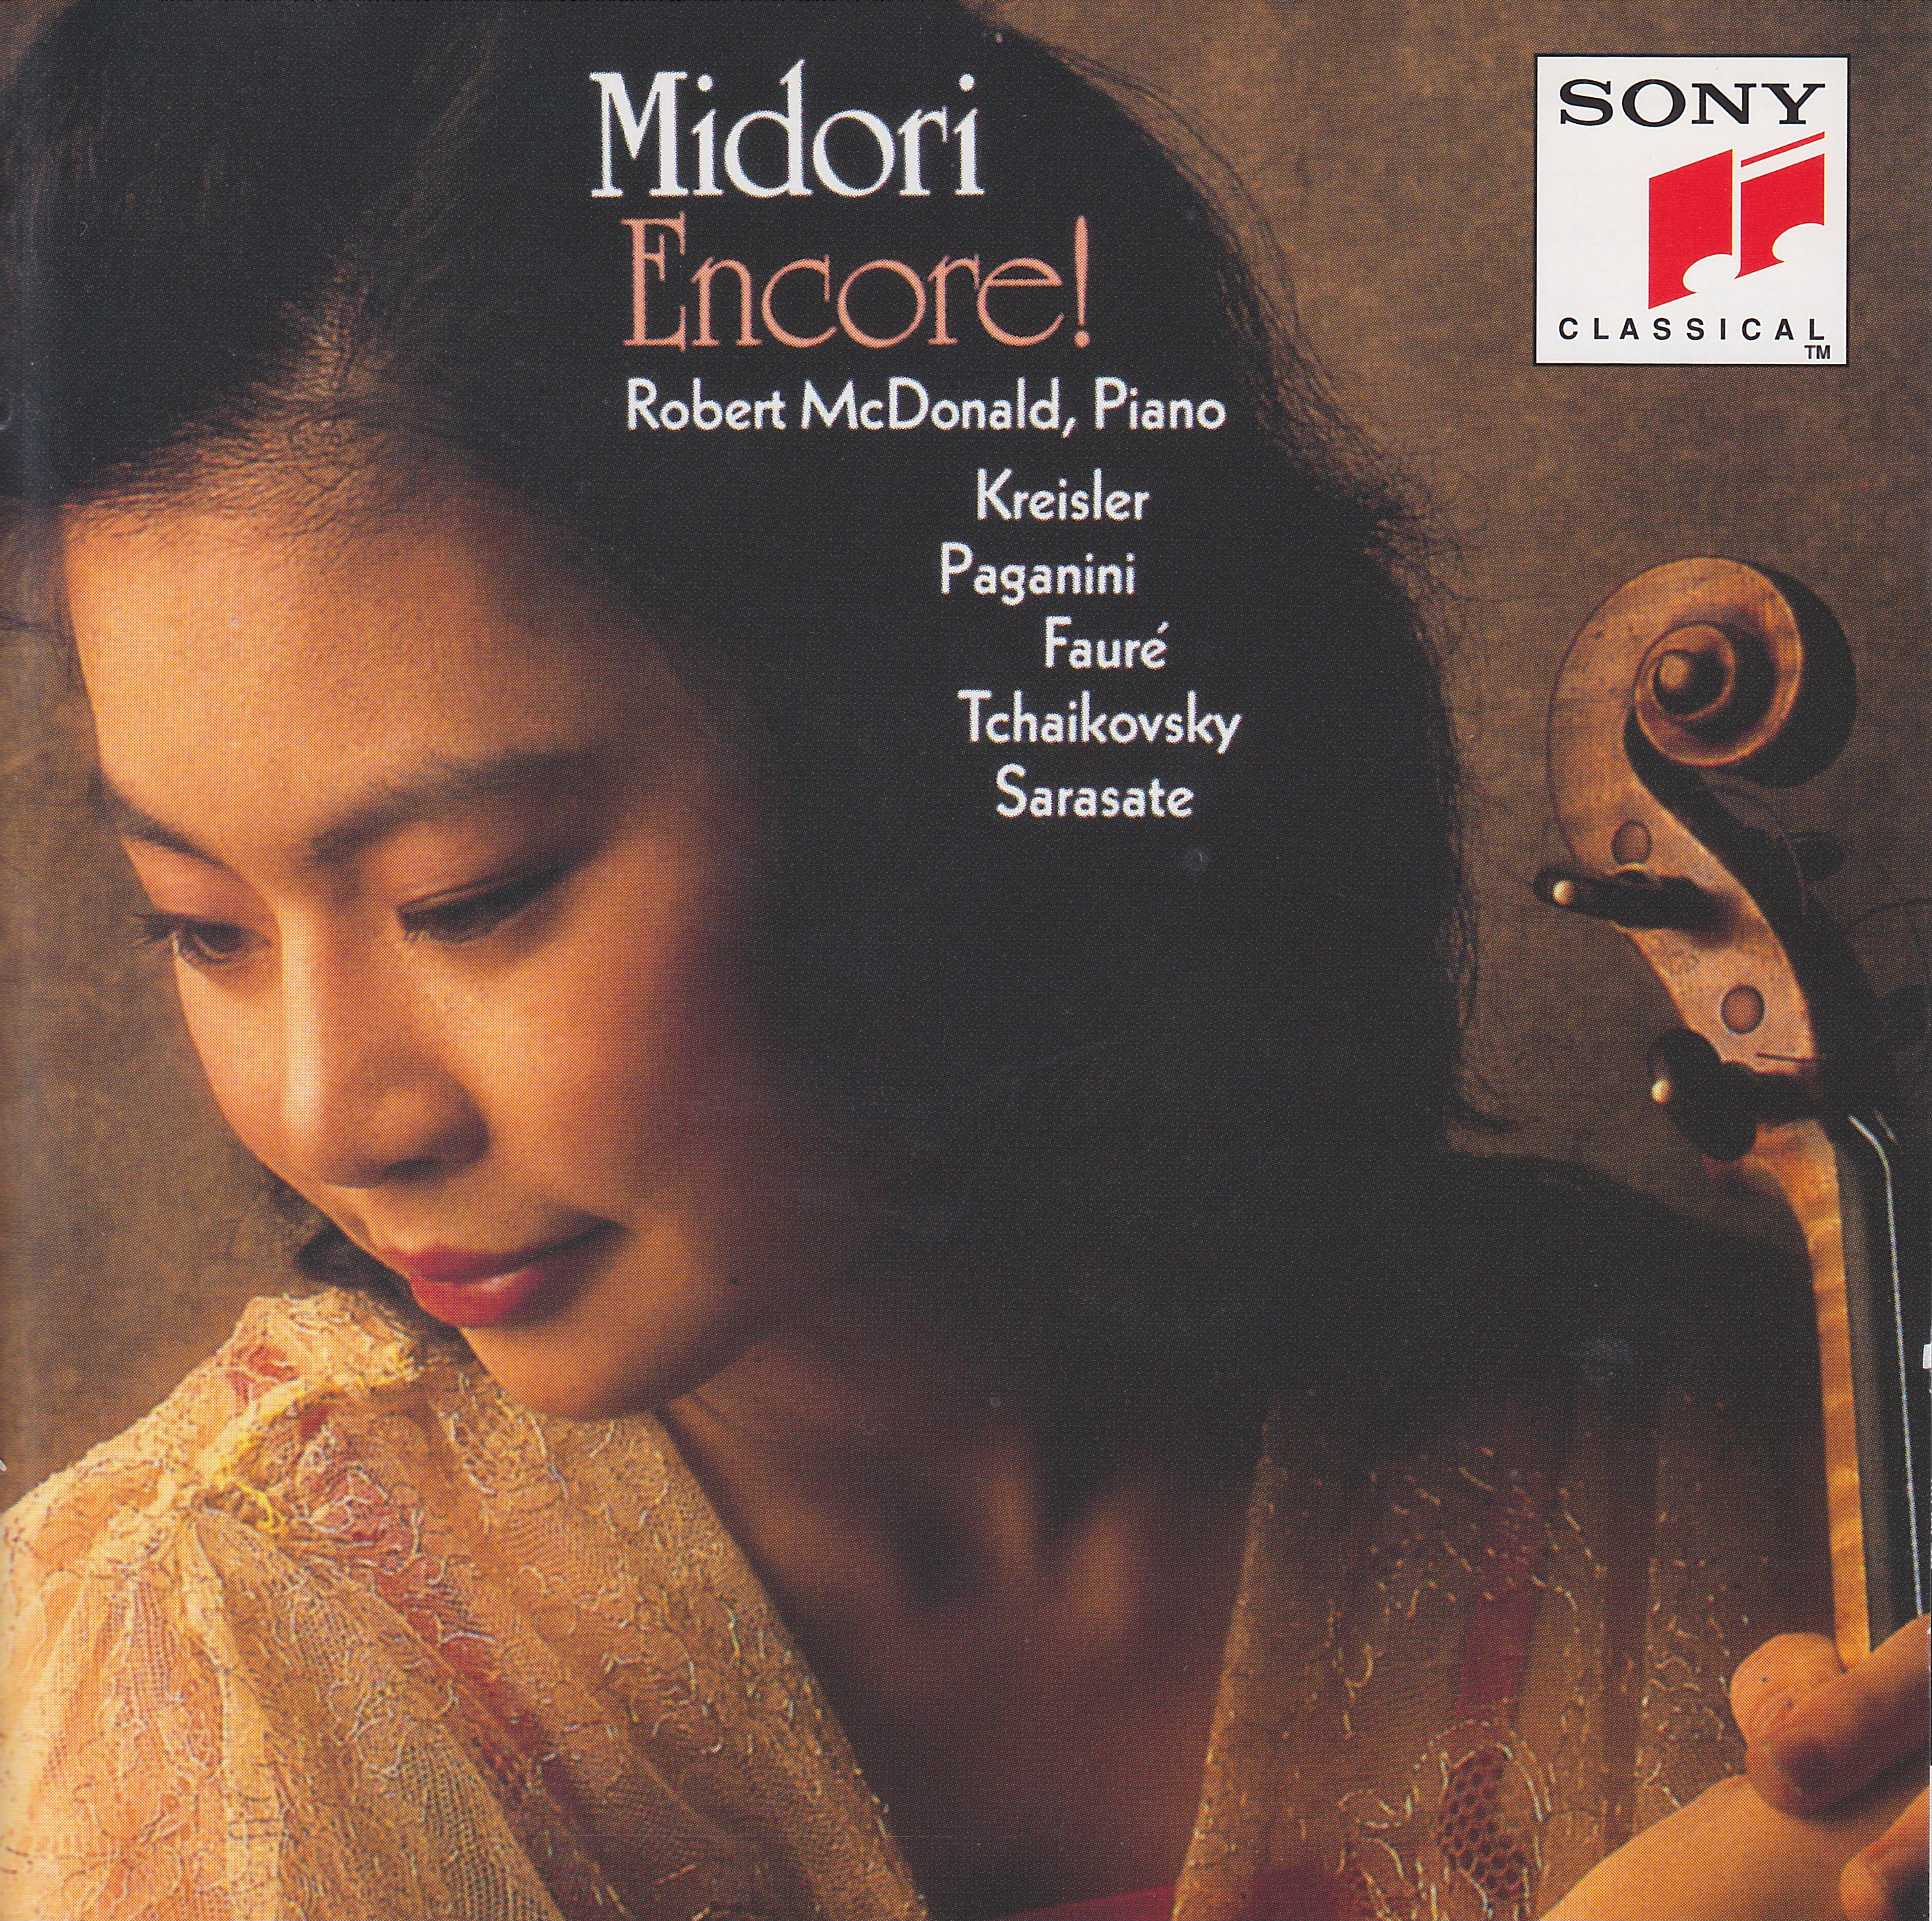 Midori - Encore 24-44.1